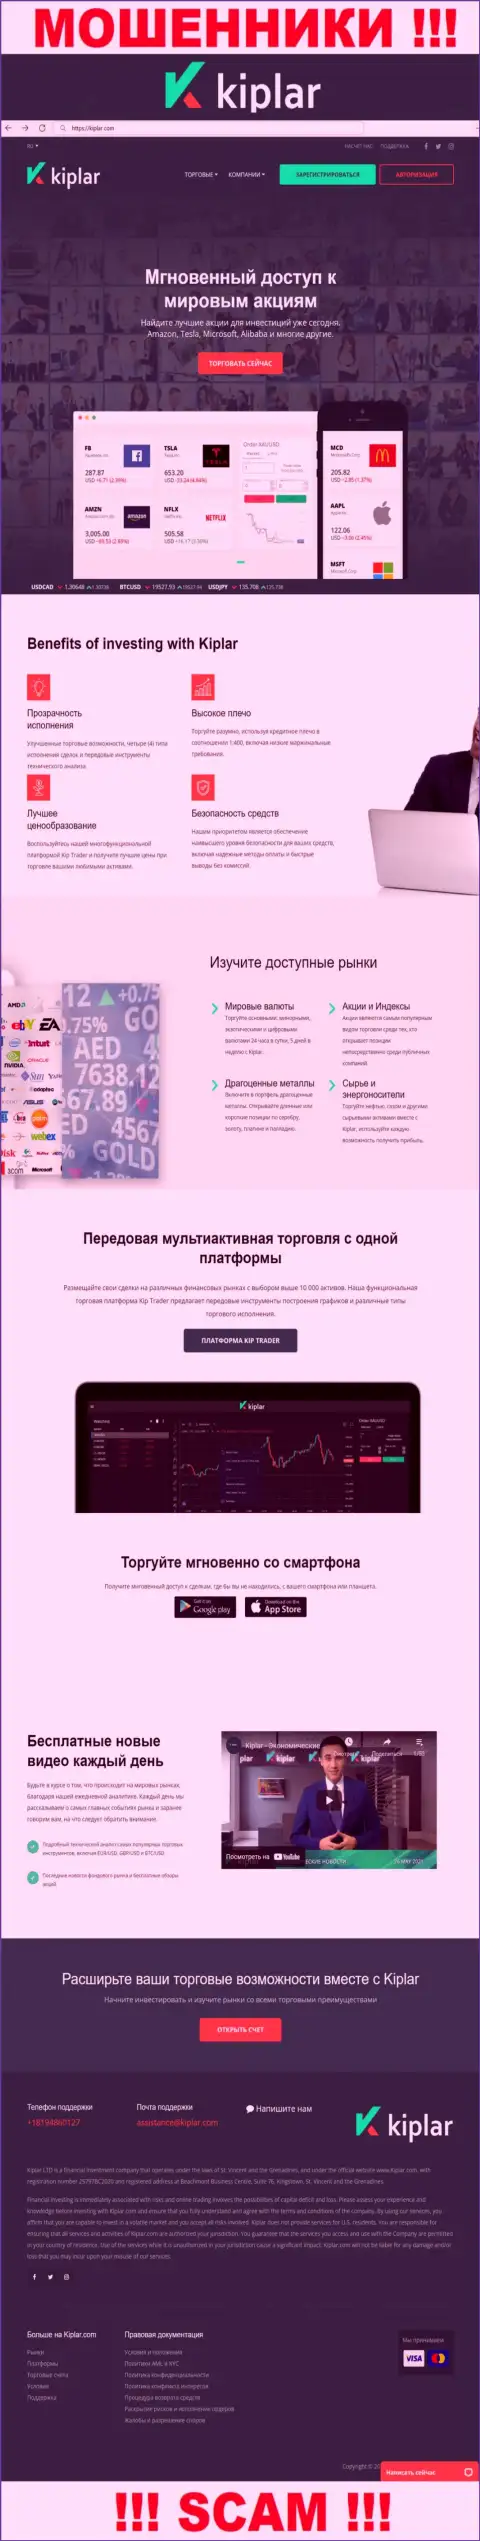 Kiplar Com - это официальный web-портал интернет мошенников Киплар